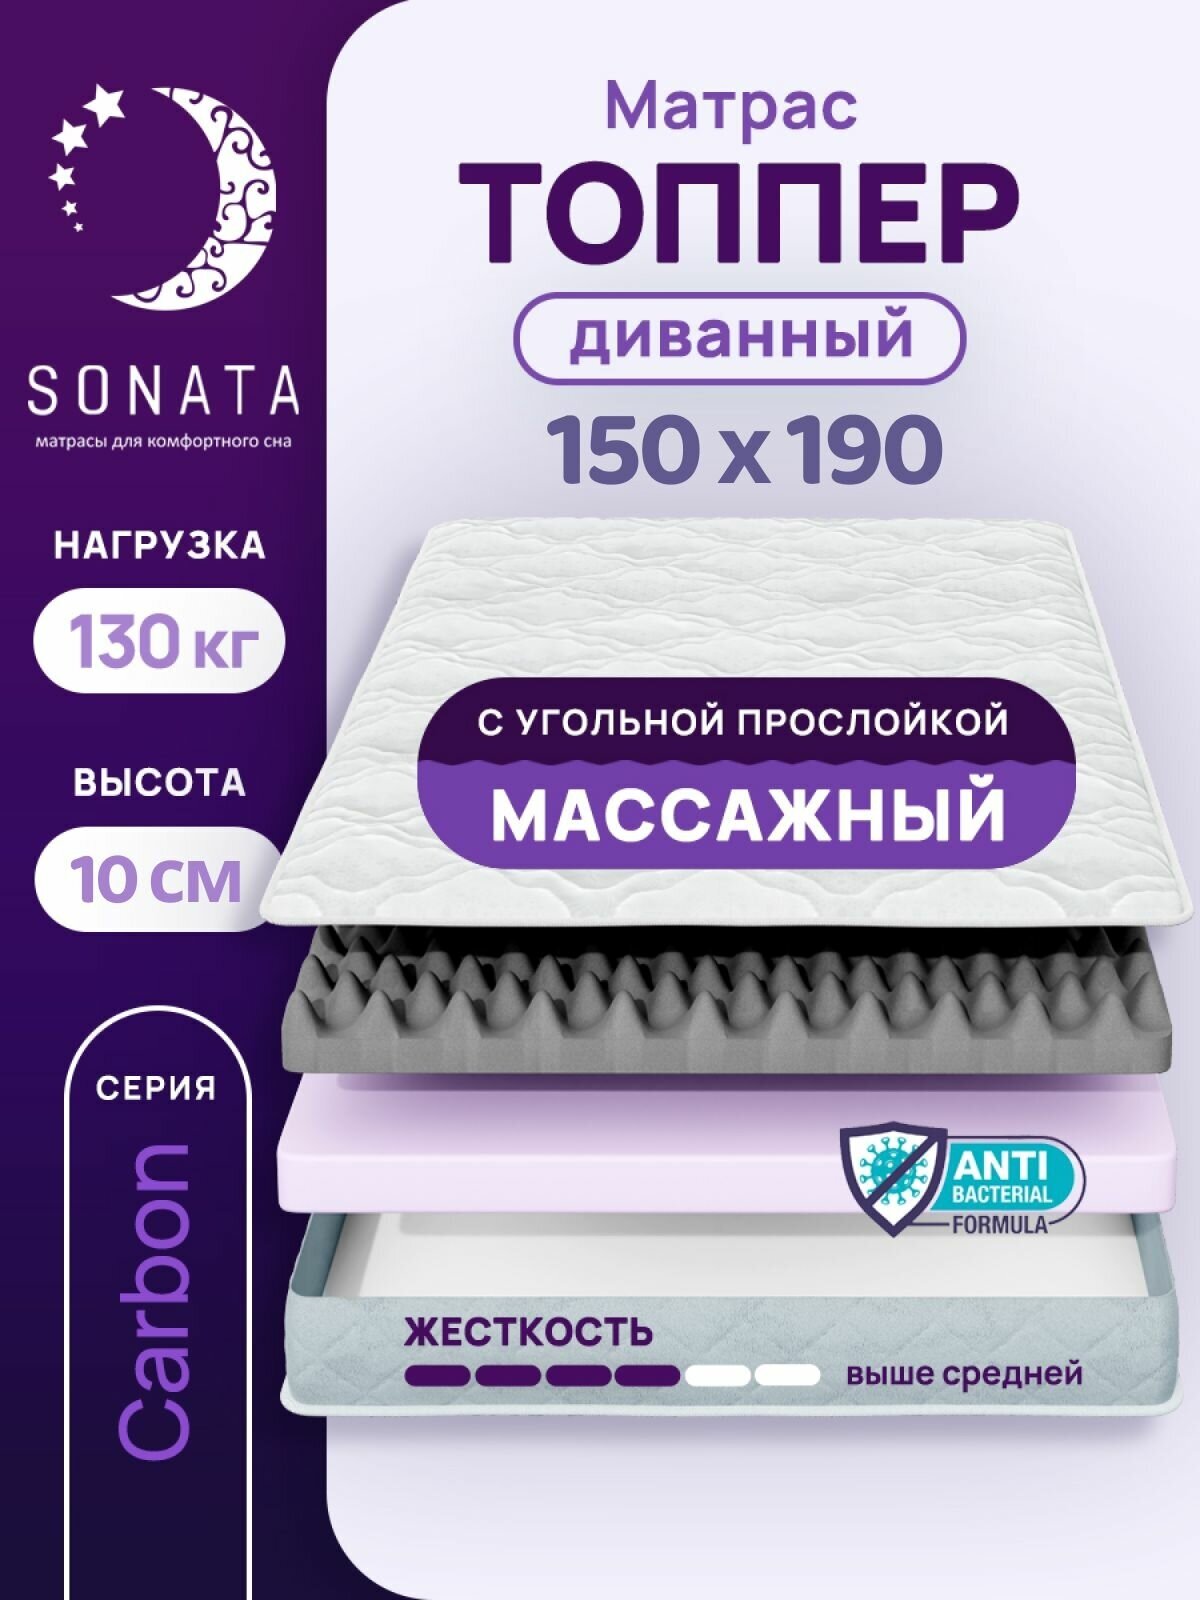 Топпер матрас 150х190 см SONATA, ортопедический, беспружинный, двуспальный, тонкий матрац для дивана, кровати, высота 10 см с массажным эффектом